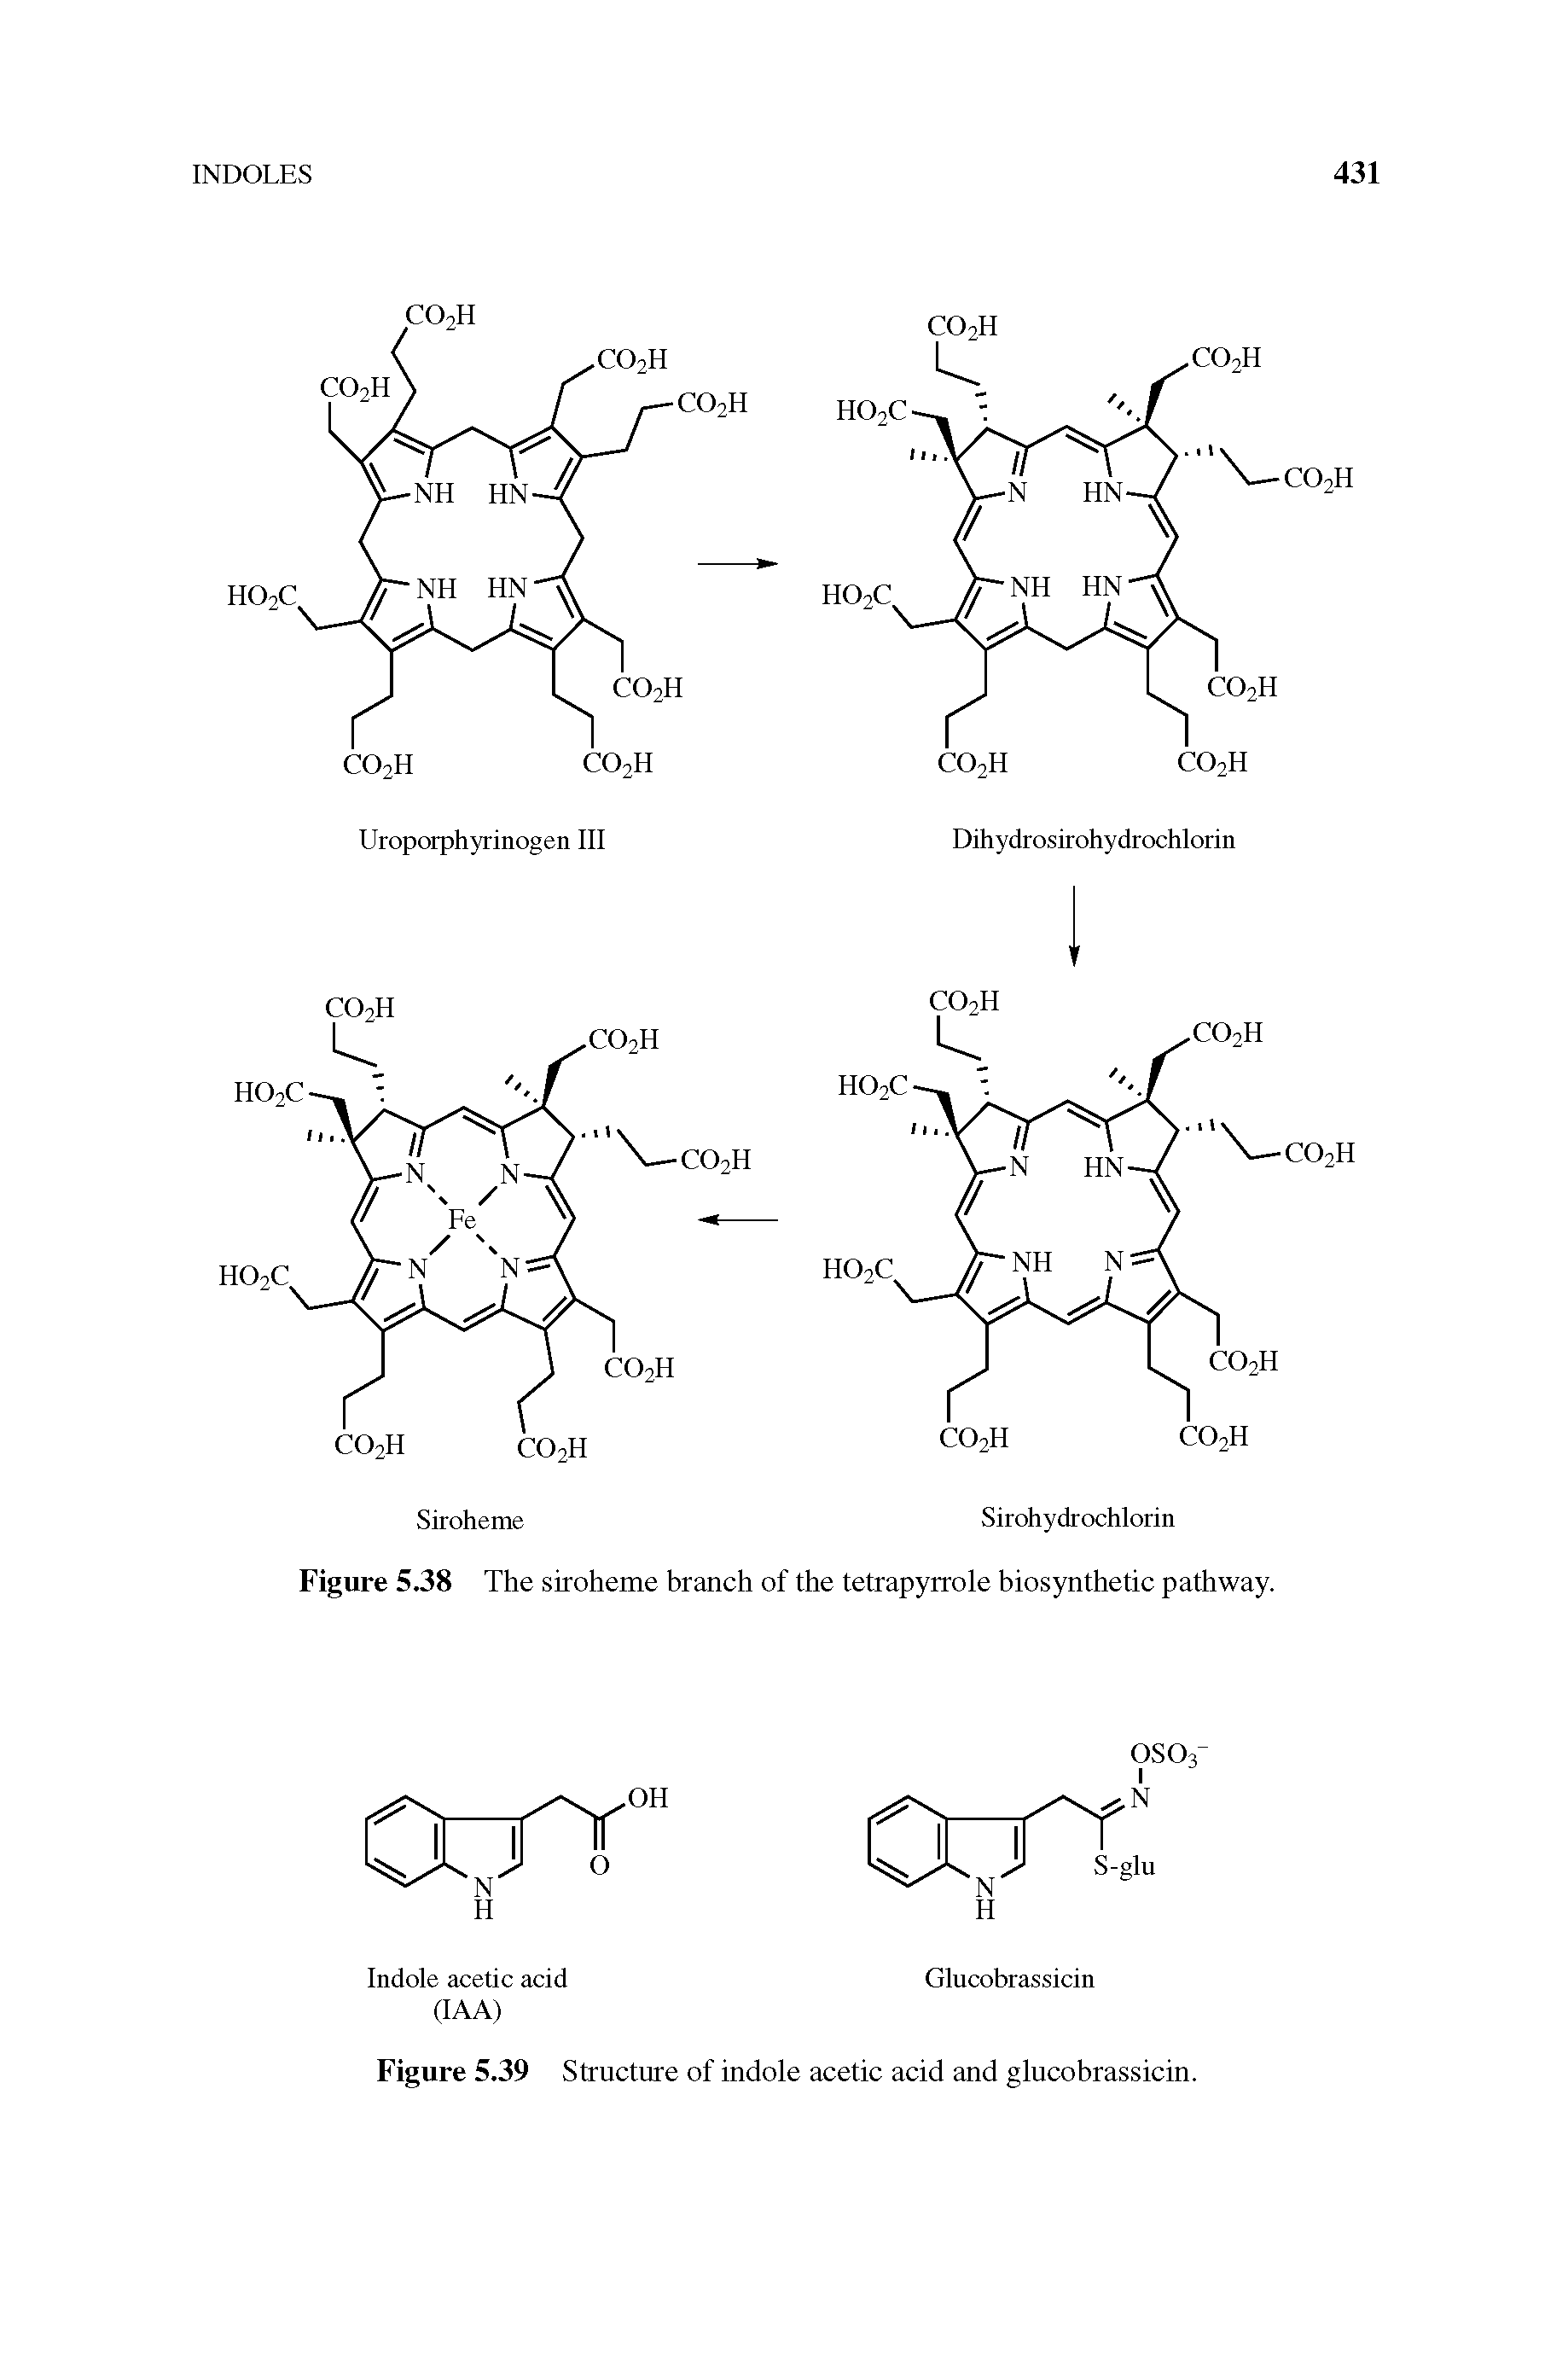 Figure 5.39 Structure of indole acetic acid and glucobrassicin.